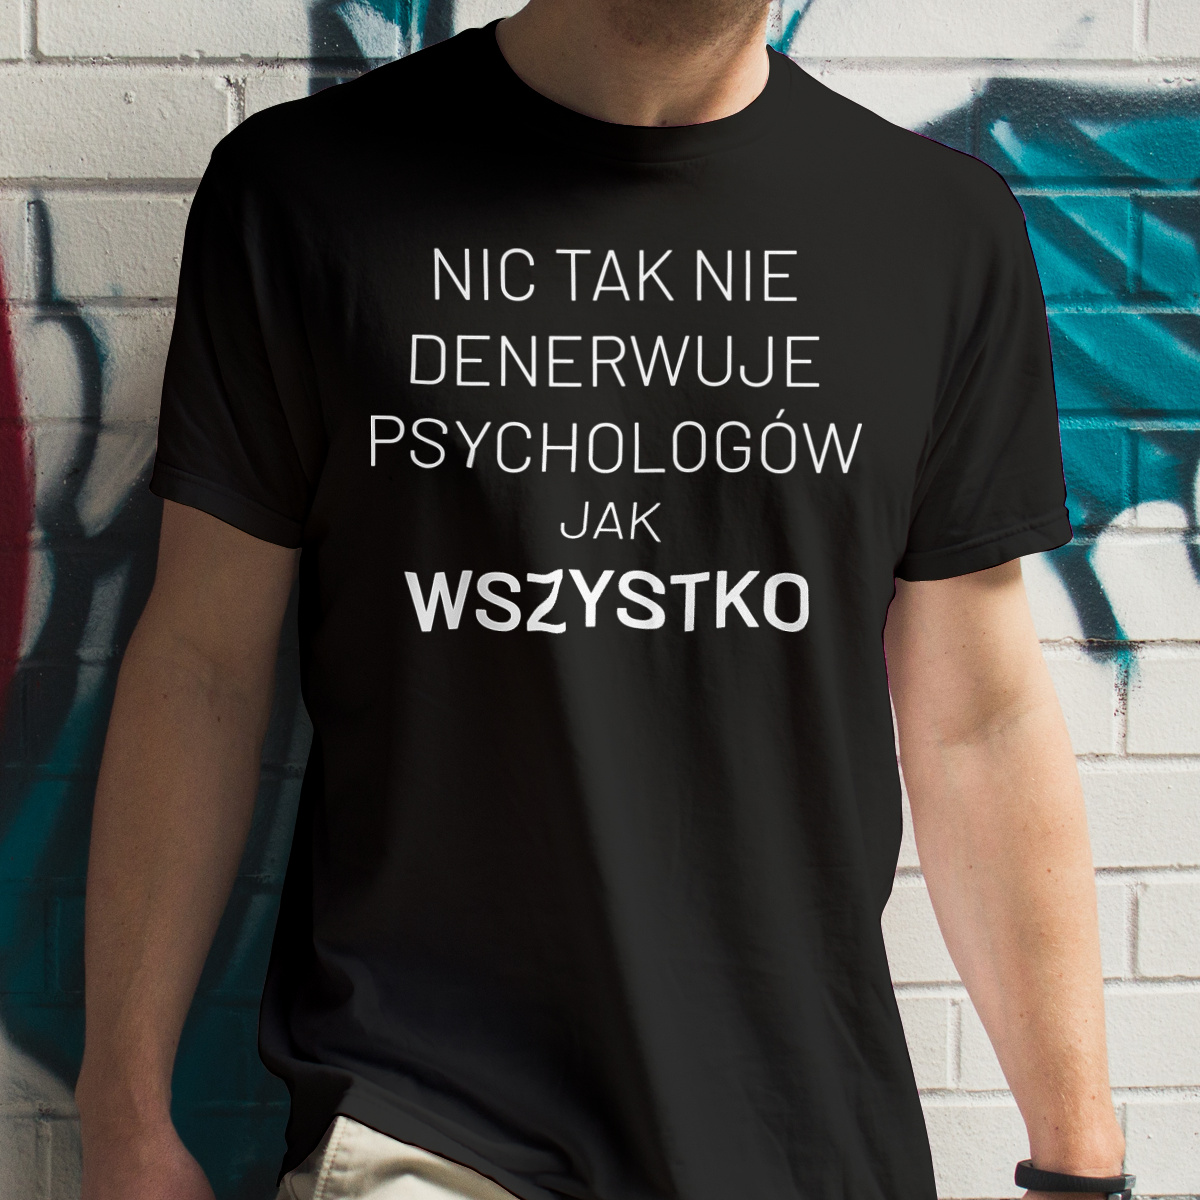 Nic Tak Nie Denerwuje Psychologów Jak Wszystko - Męska Koszulka Czarna